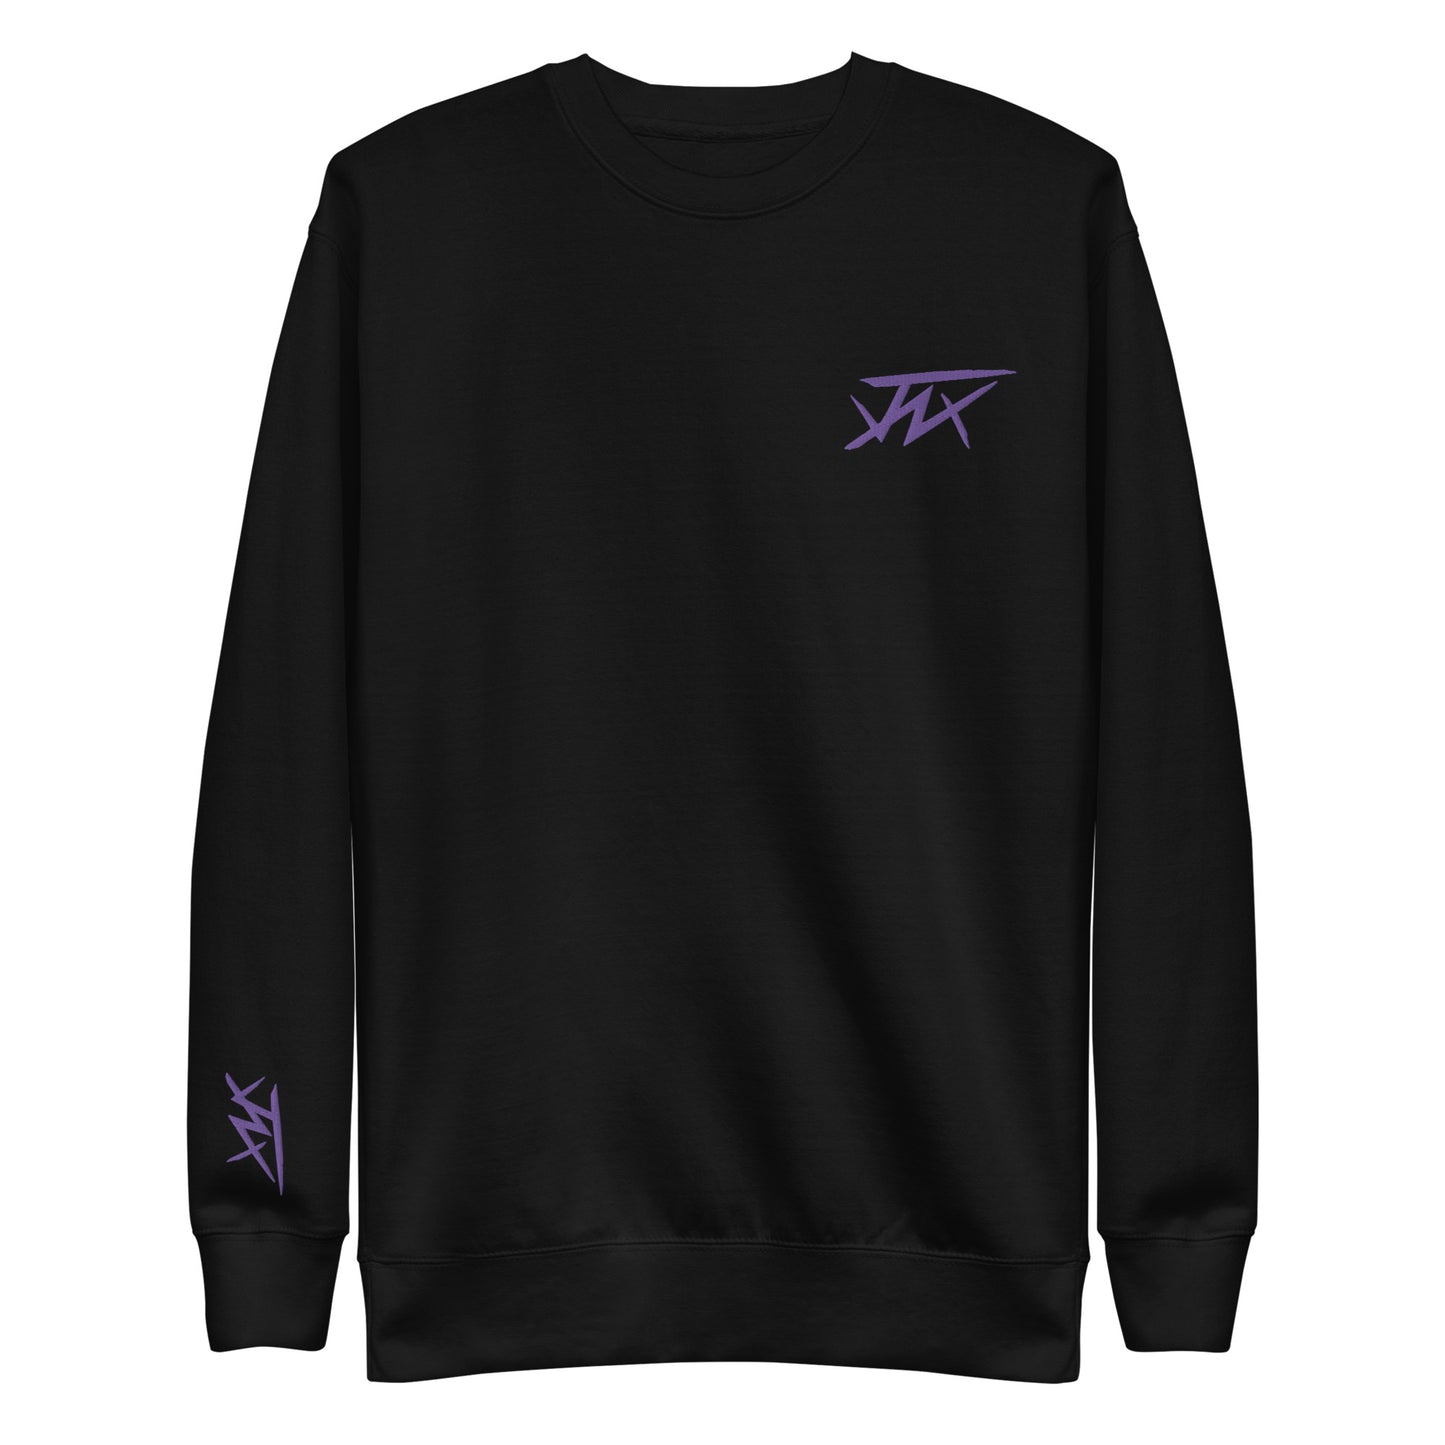 JNX Embroidered Sweatshirt